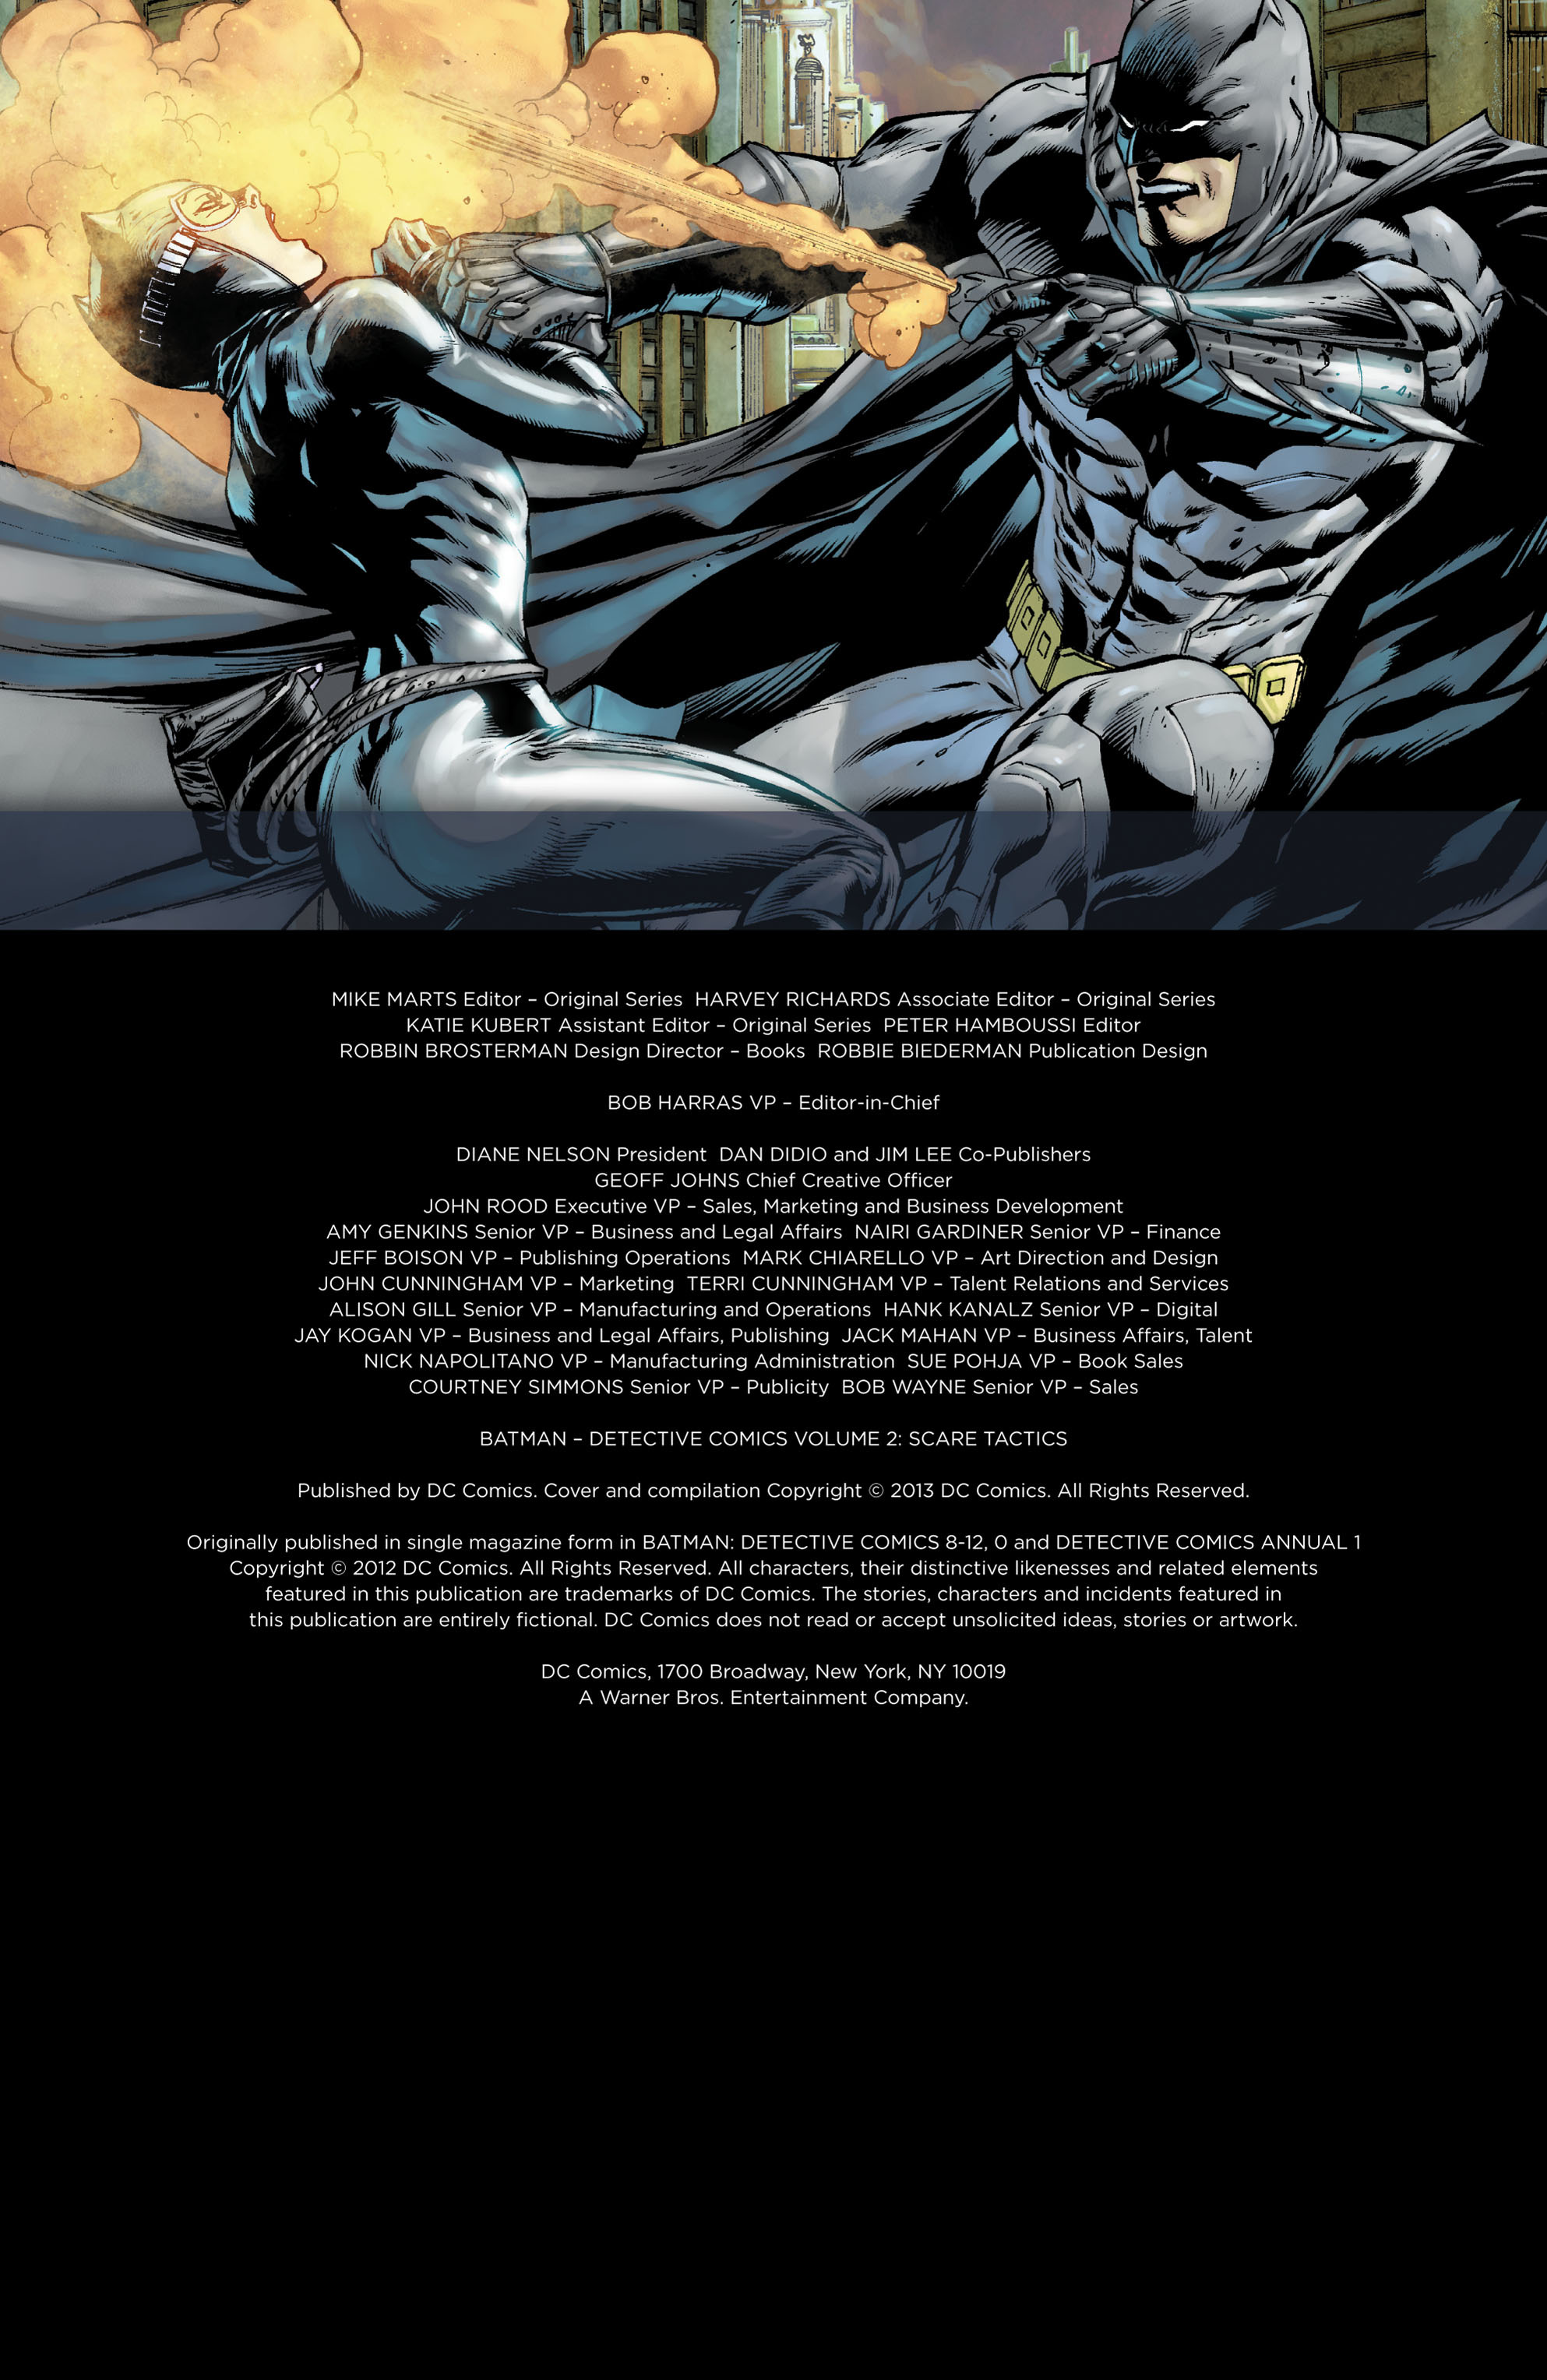 Read online Batman: Detective Comics comic -  Issue # TPB 2 - 4